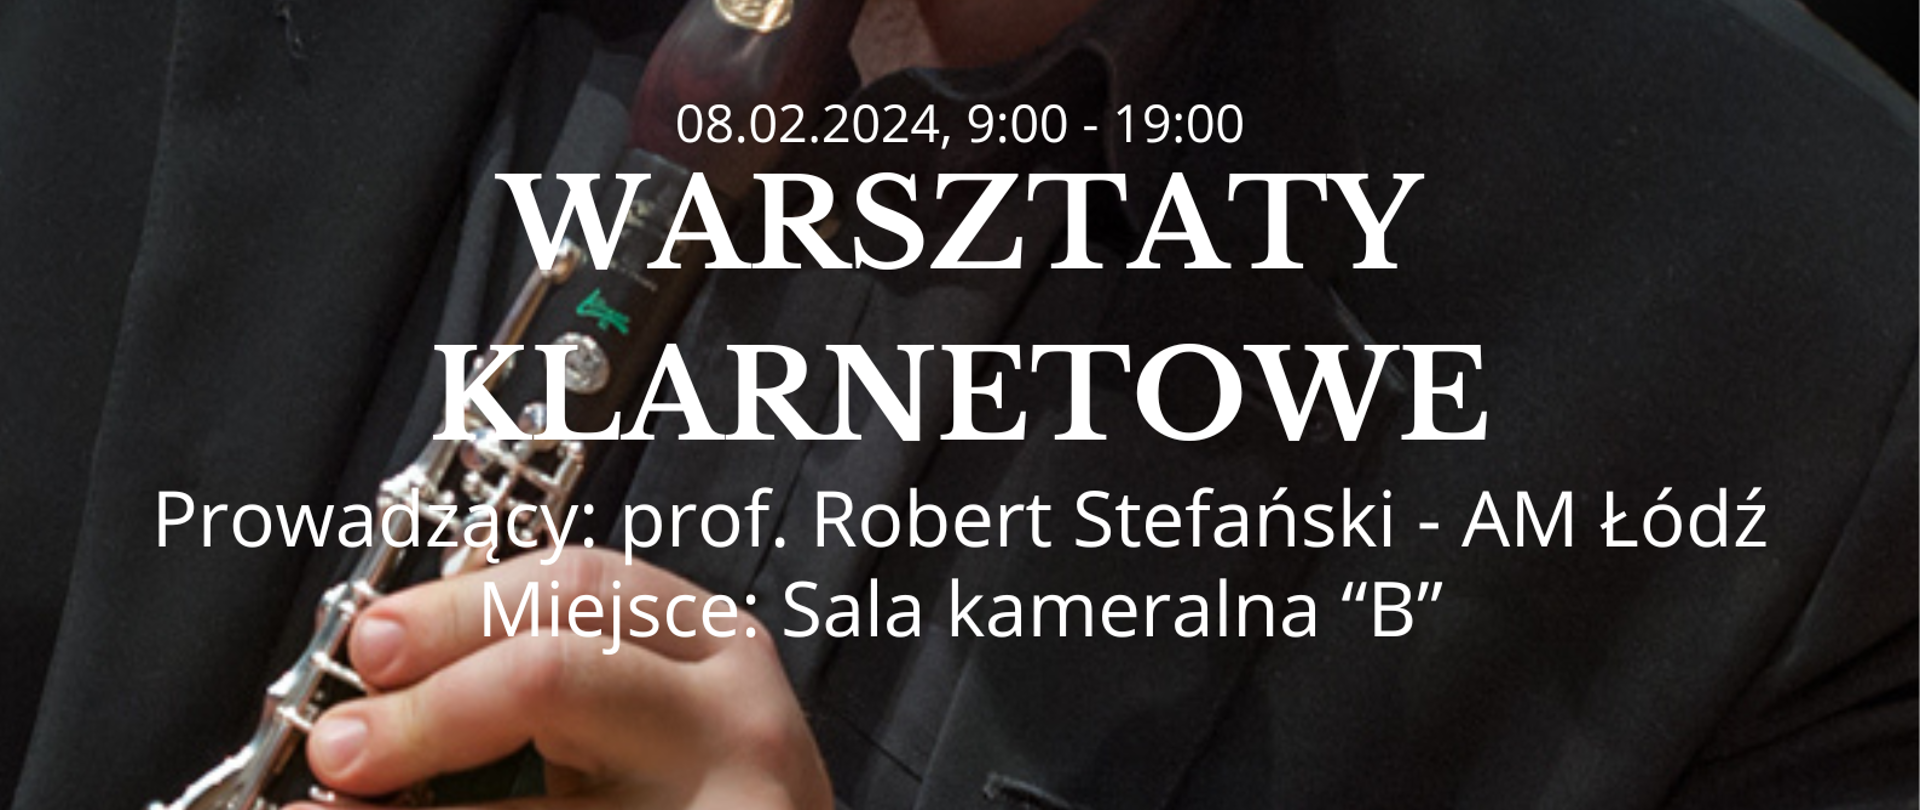 Warsztaty klarnetowe na tle zdjęcia Roberta Stefańskiego. 08.02.2024, 9:00 - 19:00, Sala B, Poznań Niewszawska 13a